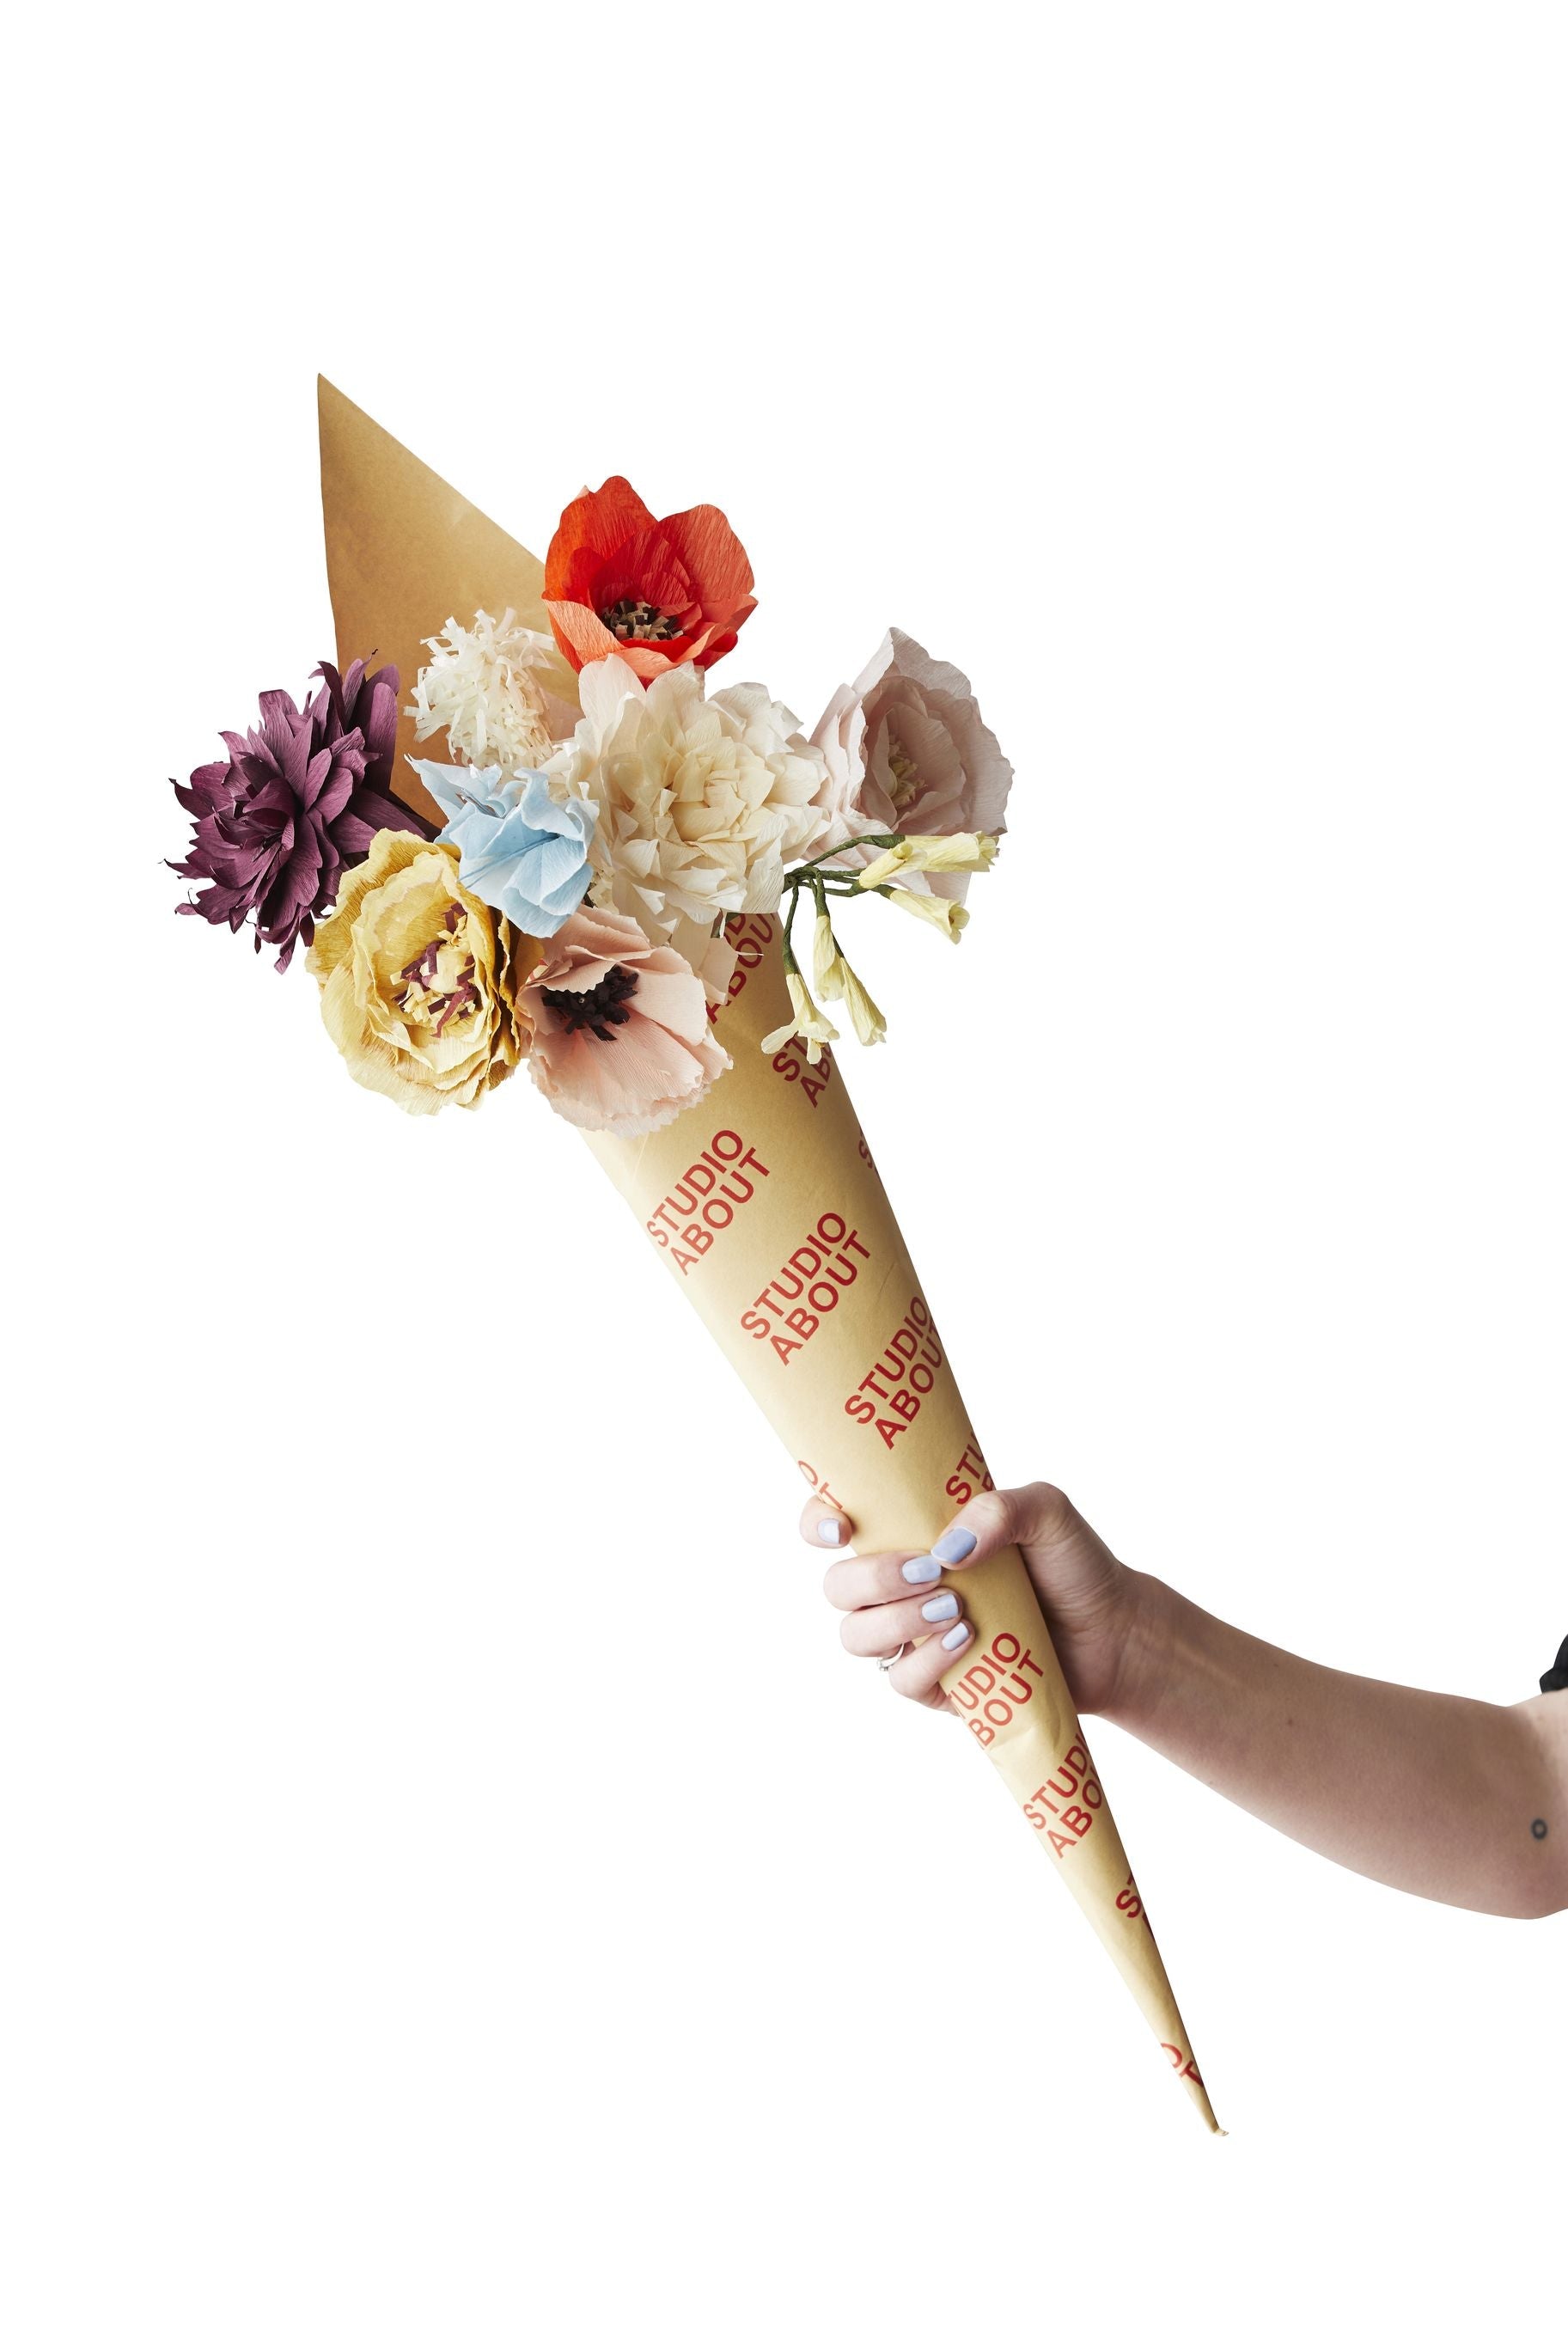 Studio sur bouquet de fleurs en papier, surprise